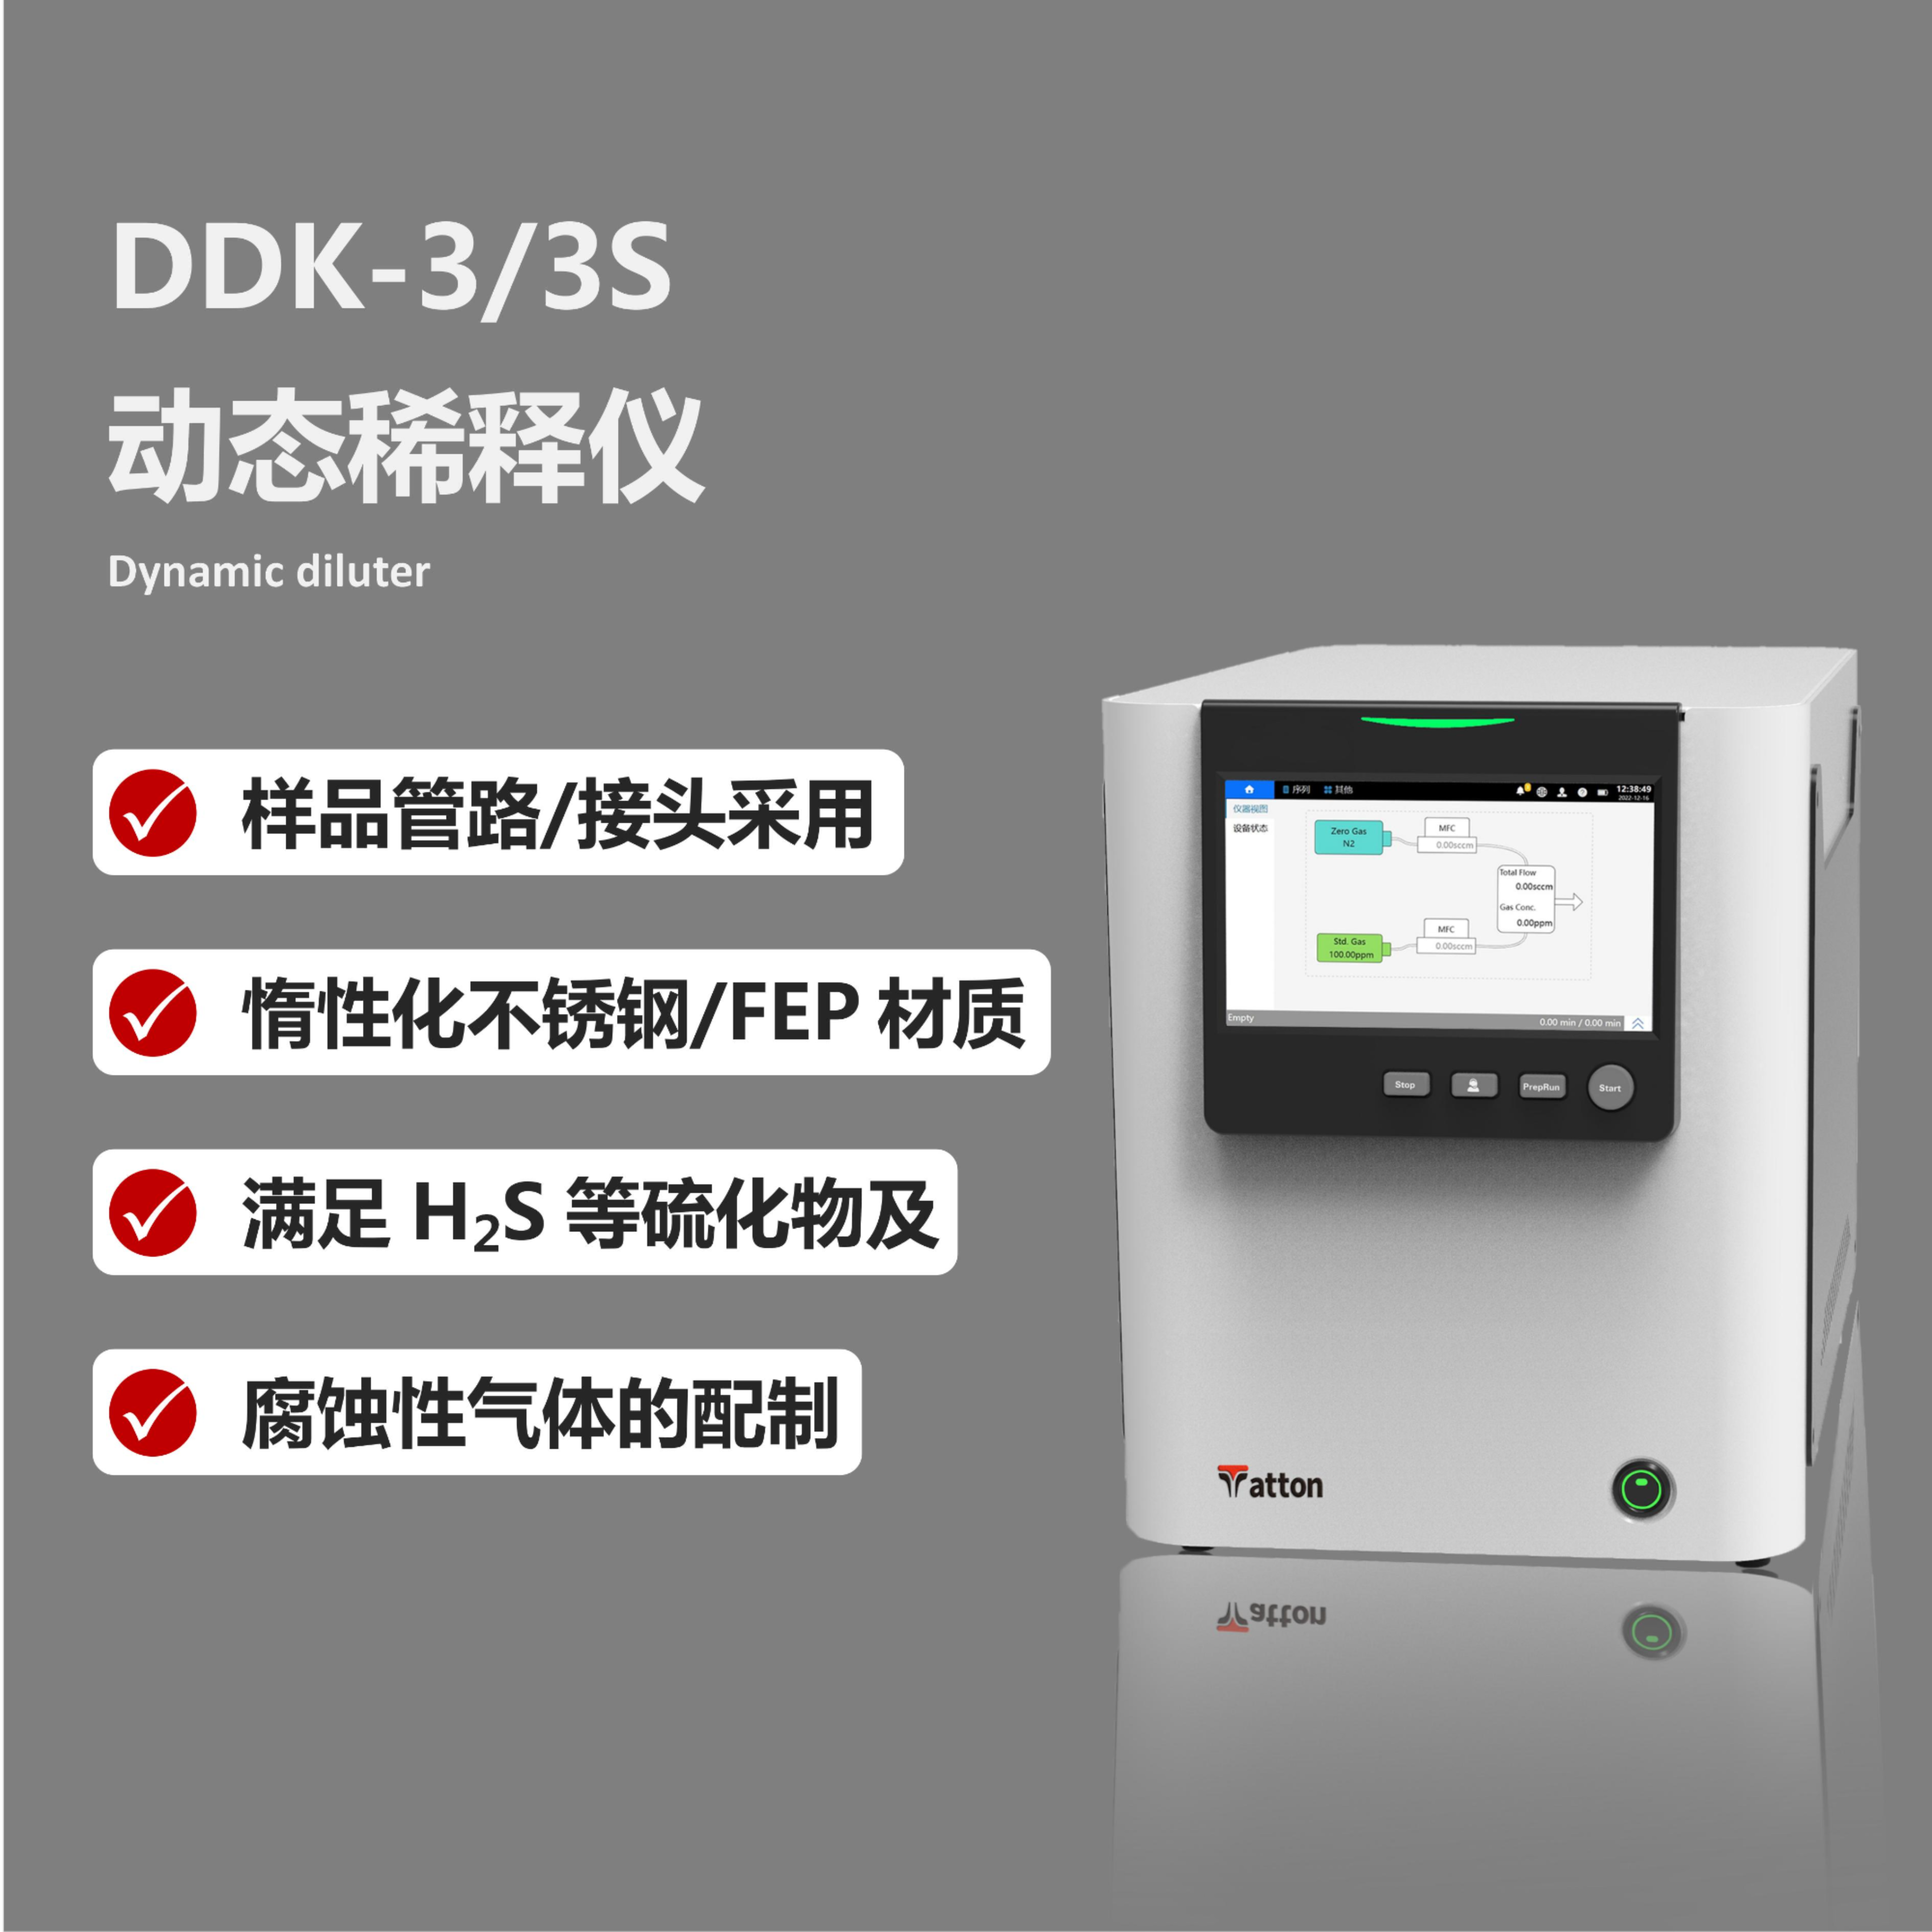 DDK-3/3S动态稀释仪